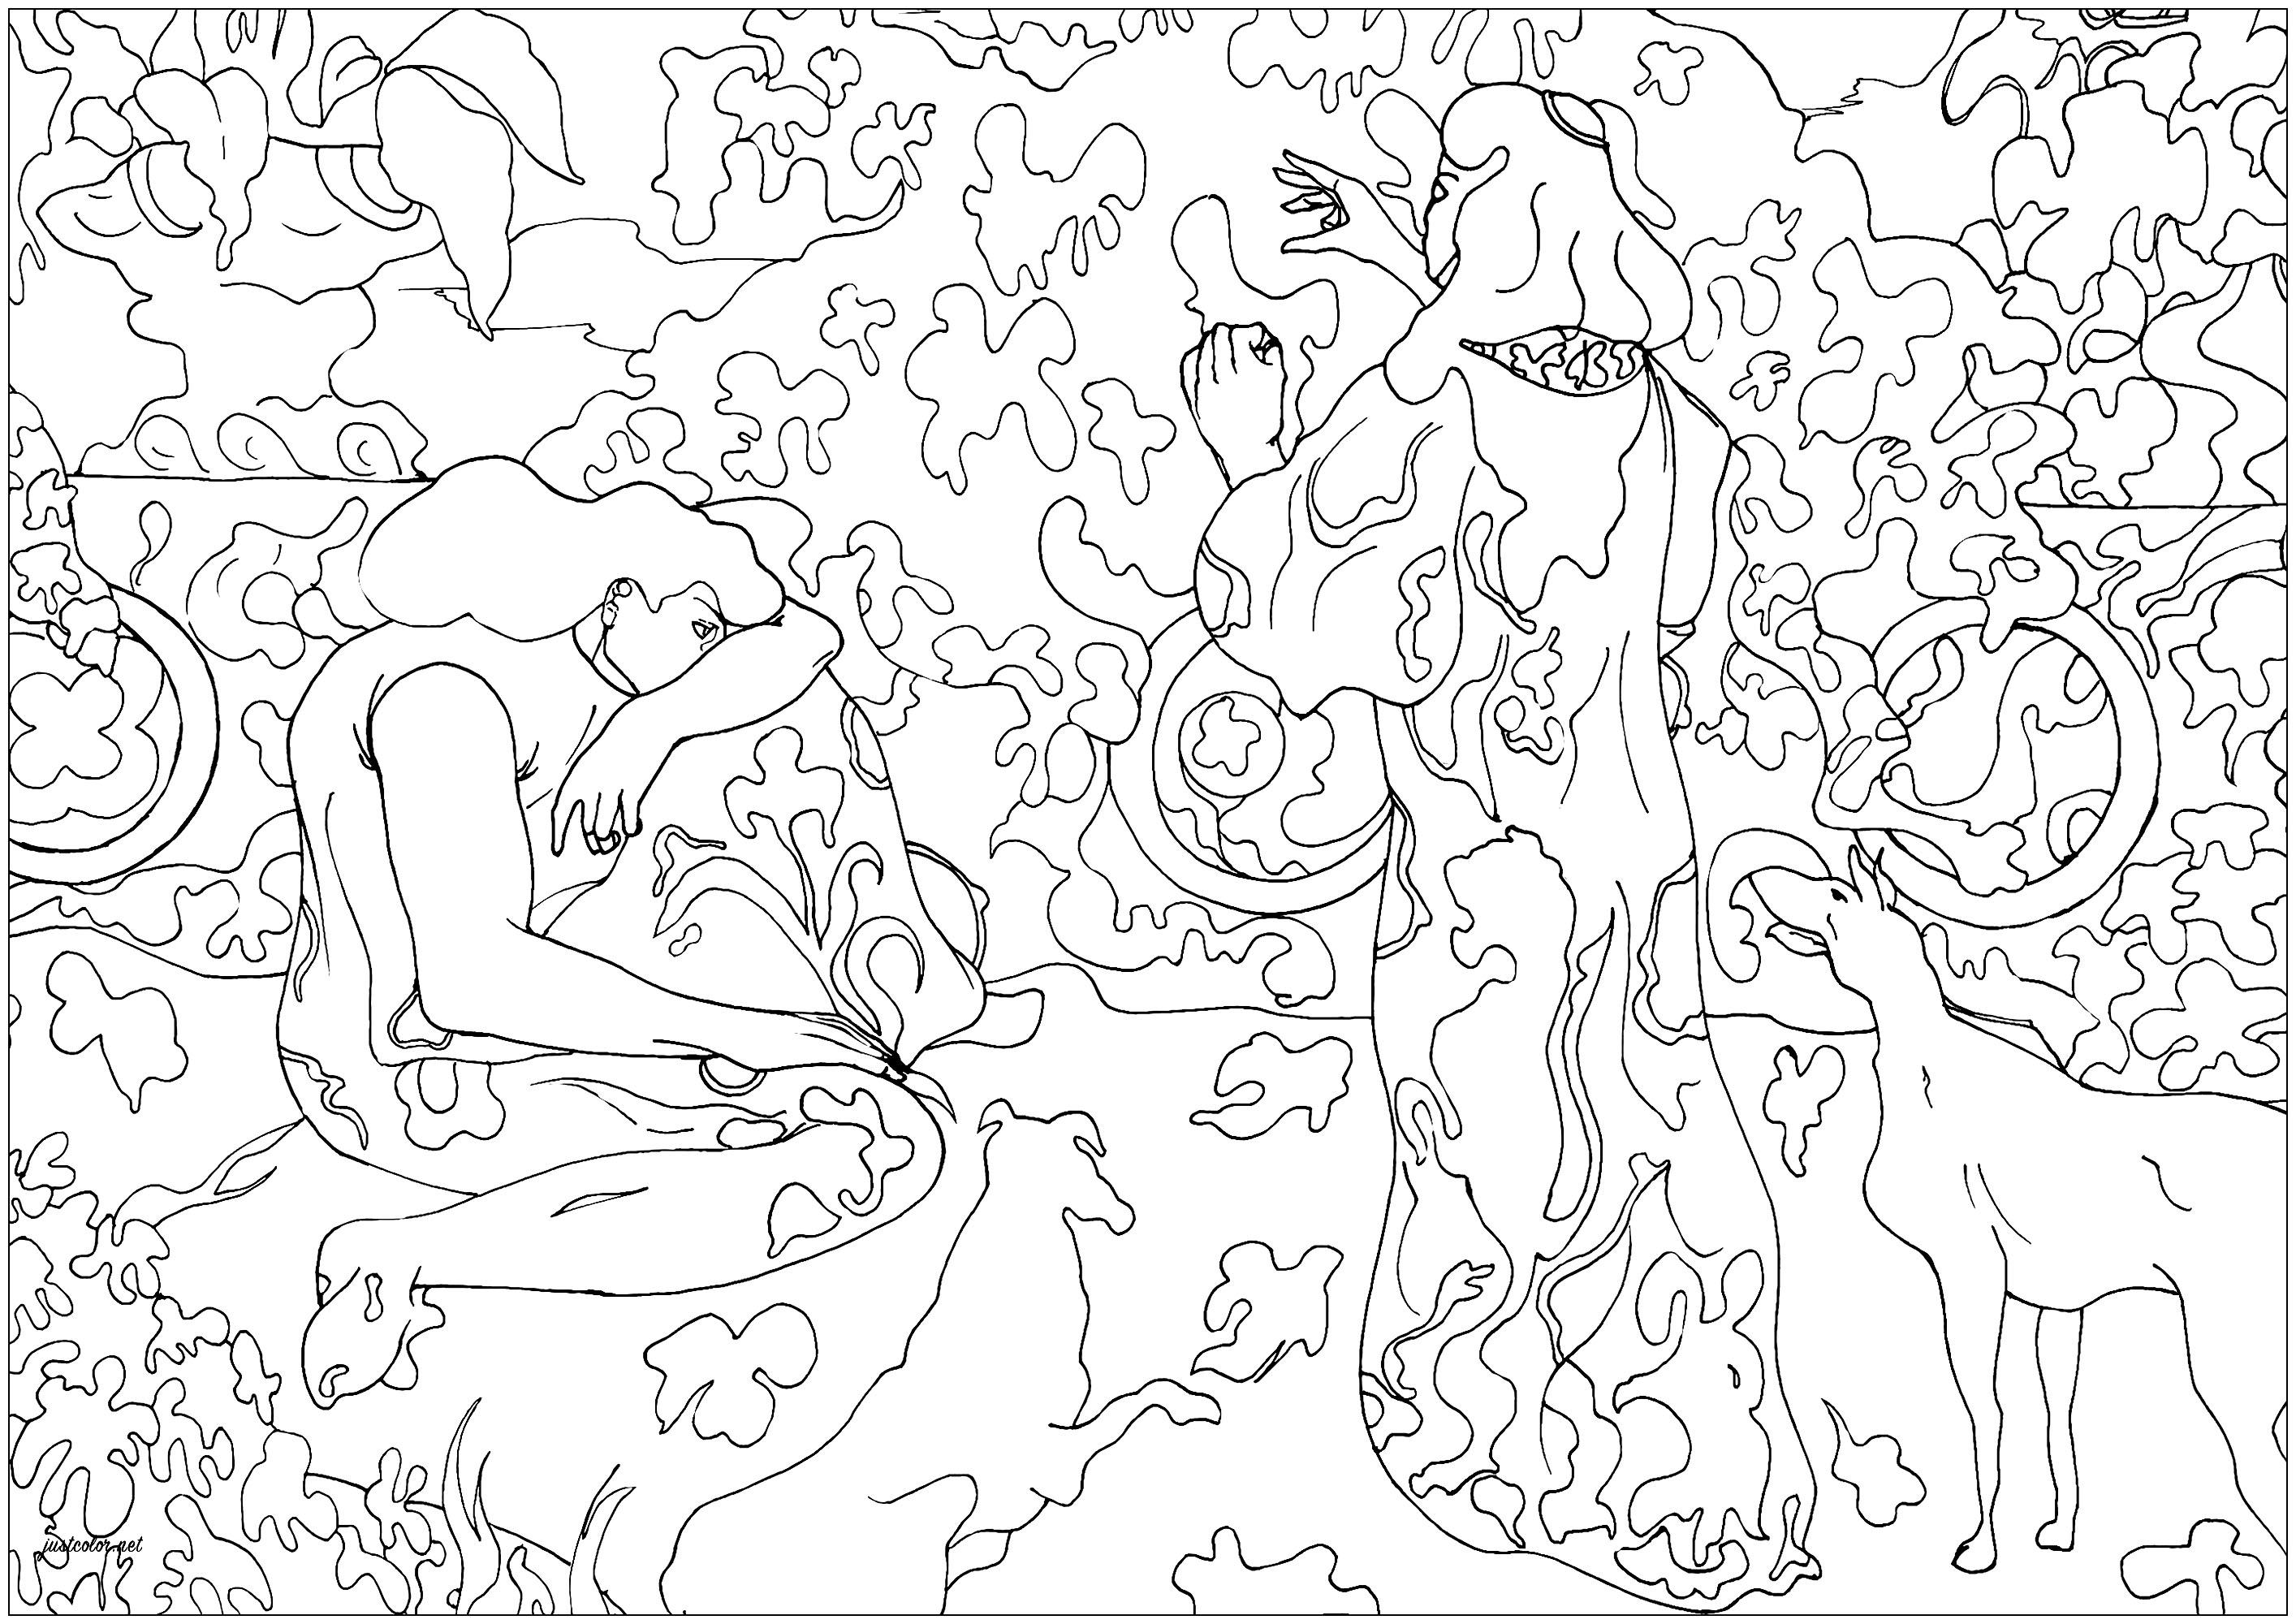 Página para colorear creada a partir de la obra de Paul-Élie Ranson 'Princesas en la terraza' (1894). Este cuadro muy inspirado en obras japonesas representa a dos elegantes mujeres y dos perros, en lo que parece ser la terraza de una rica finca.